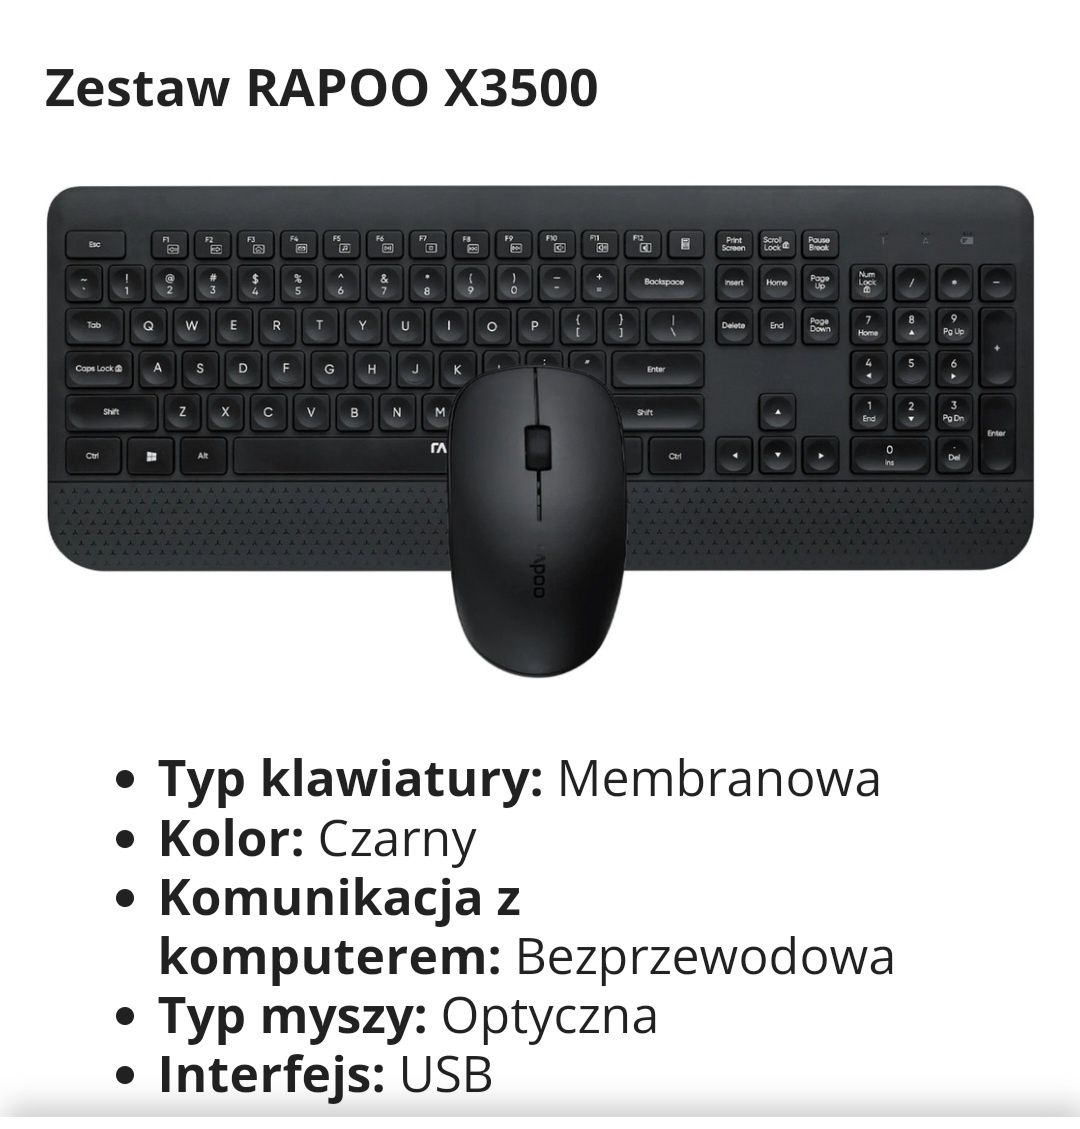 Zestaw RAPOO X3500 bezprzewodowy zestaw nowy okazja